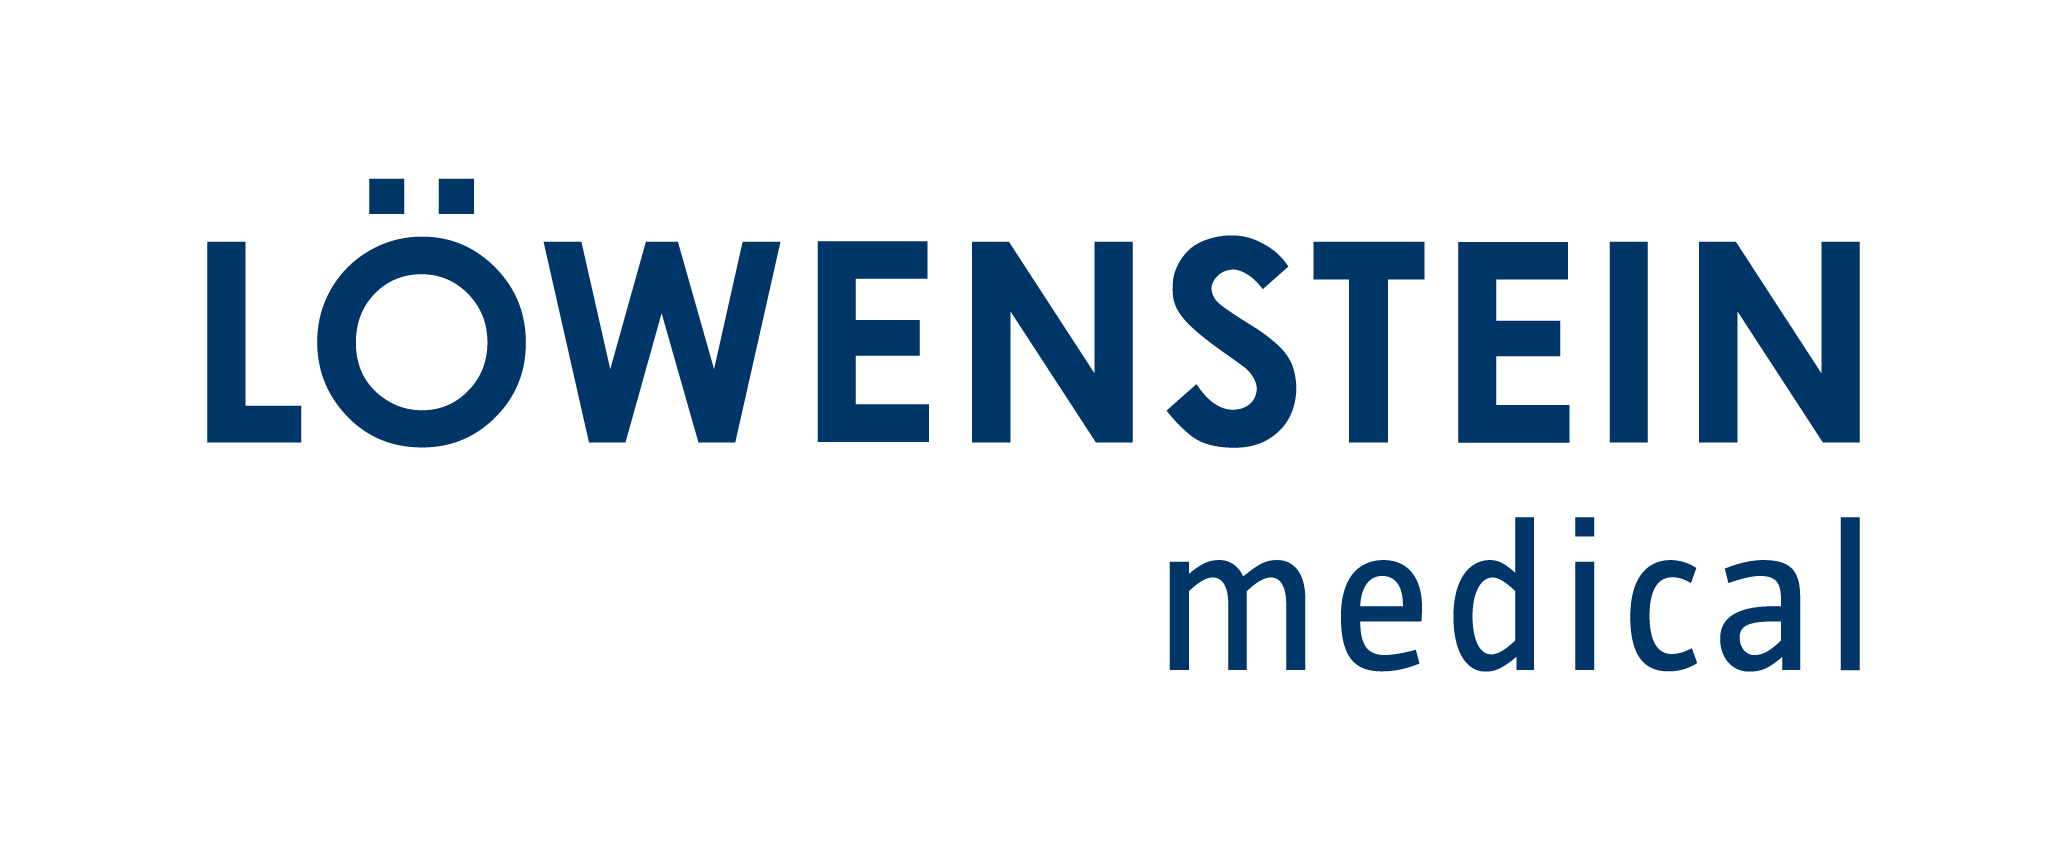 Löwenstein Medical SE & Co. KG.